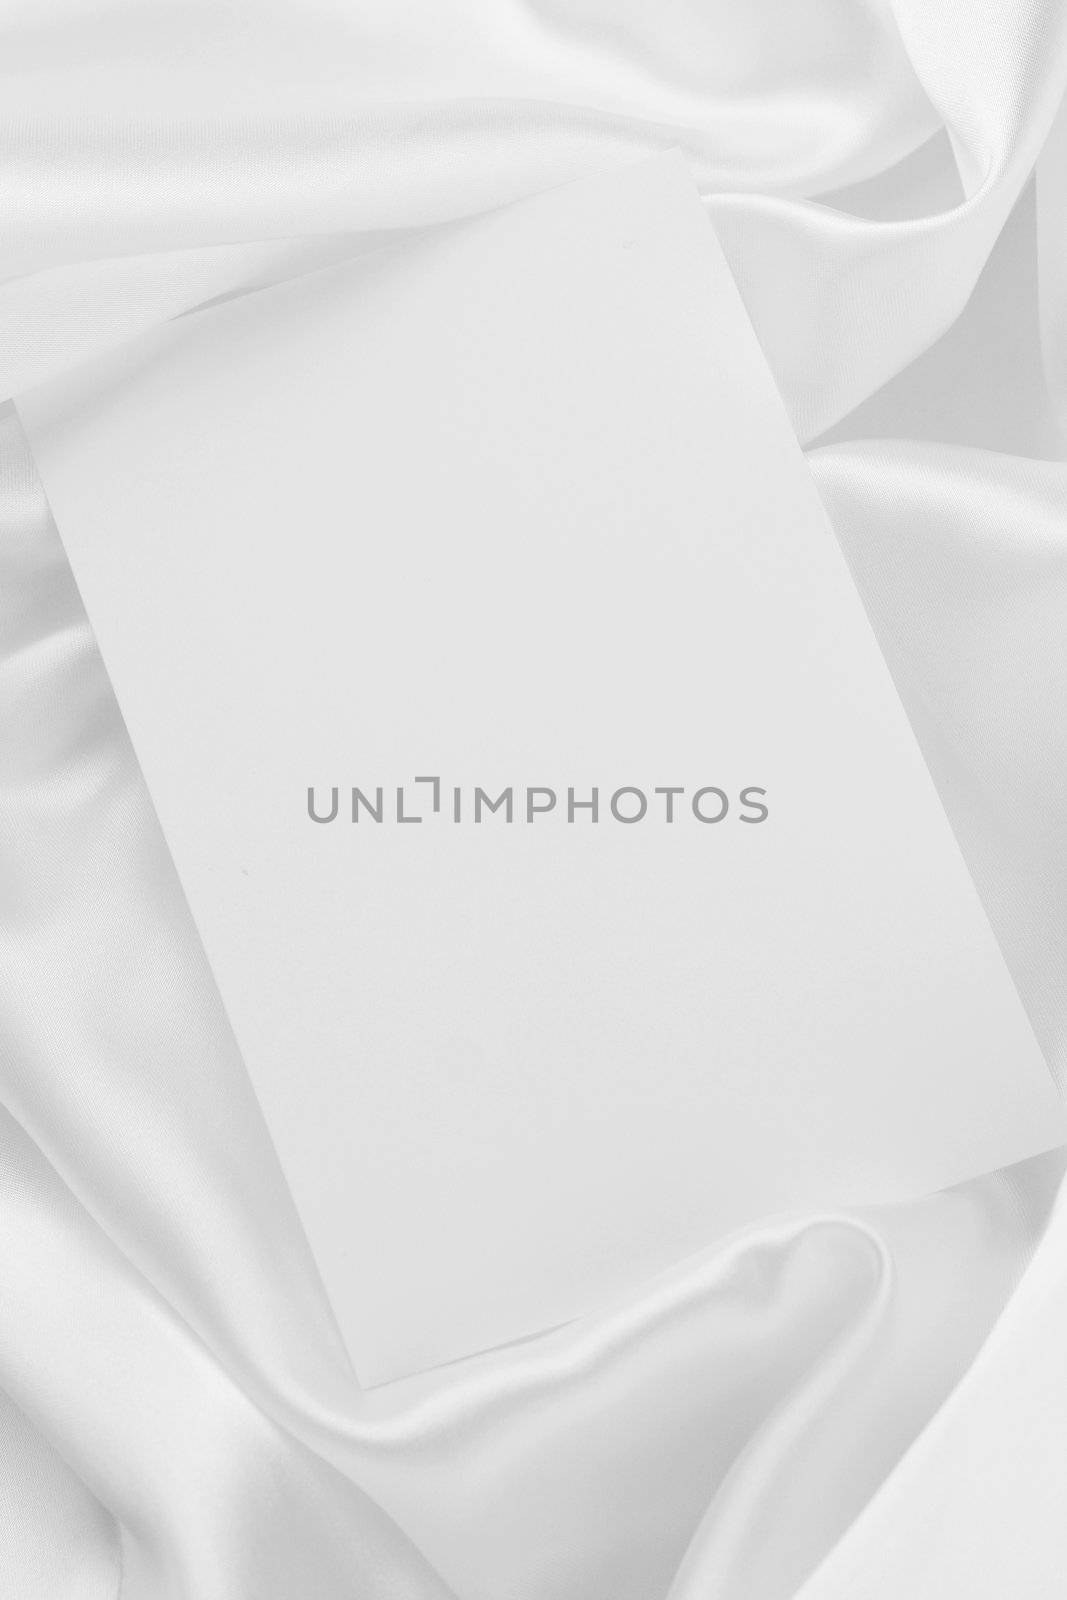 White card on white satin by jarenwicklund